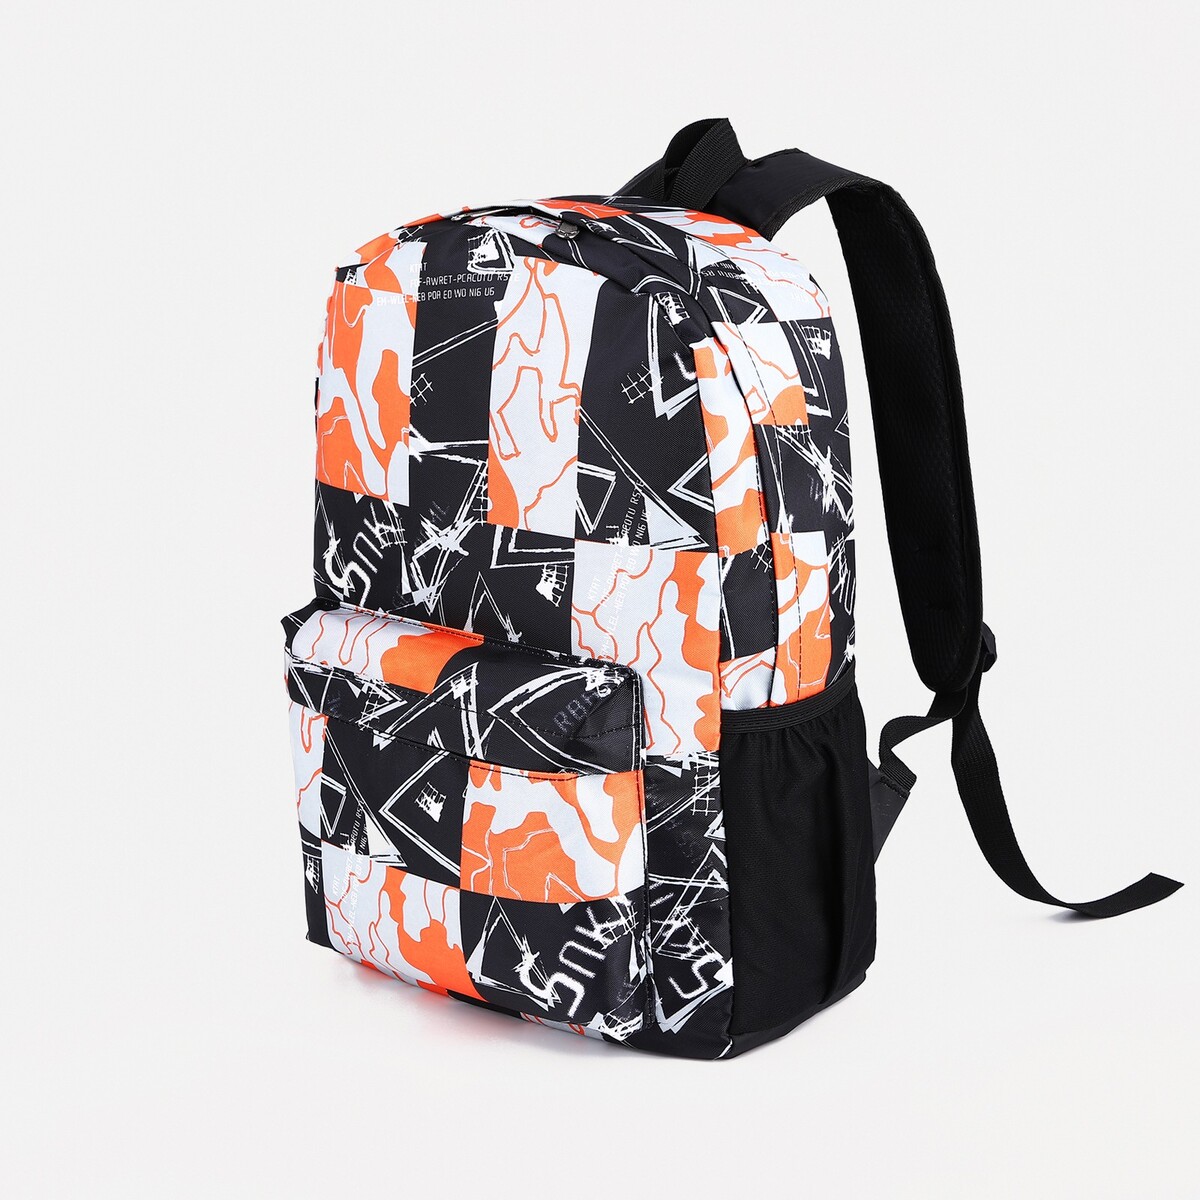 Рюкзак школьный из текстиля на молнии, 3 кармана, цвет оранжевый/черный рюкзак ninetygo urban daily backpack оранжевый